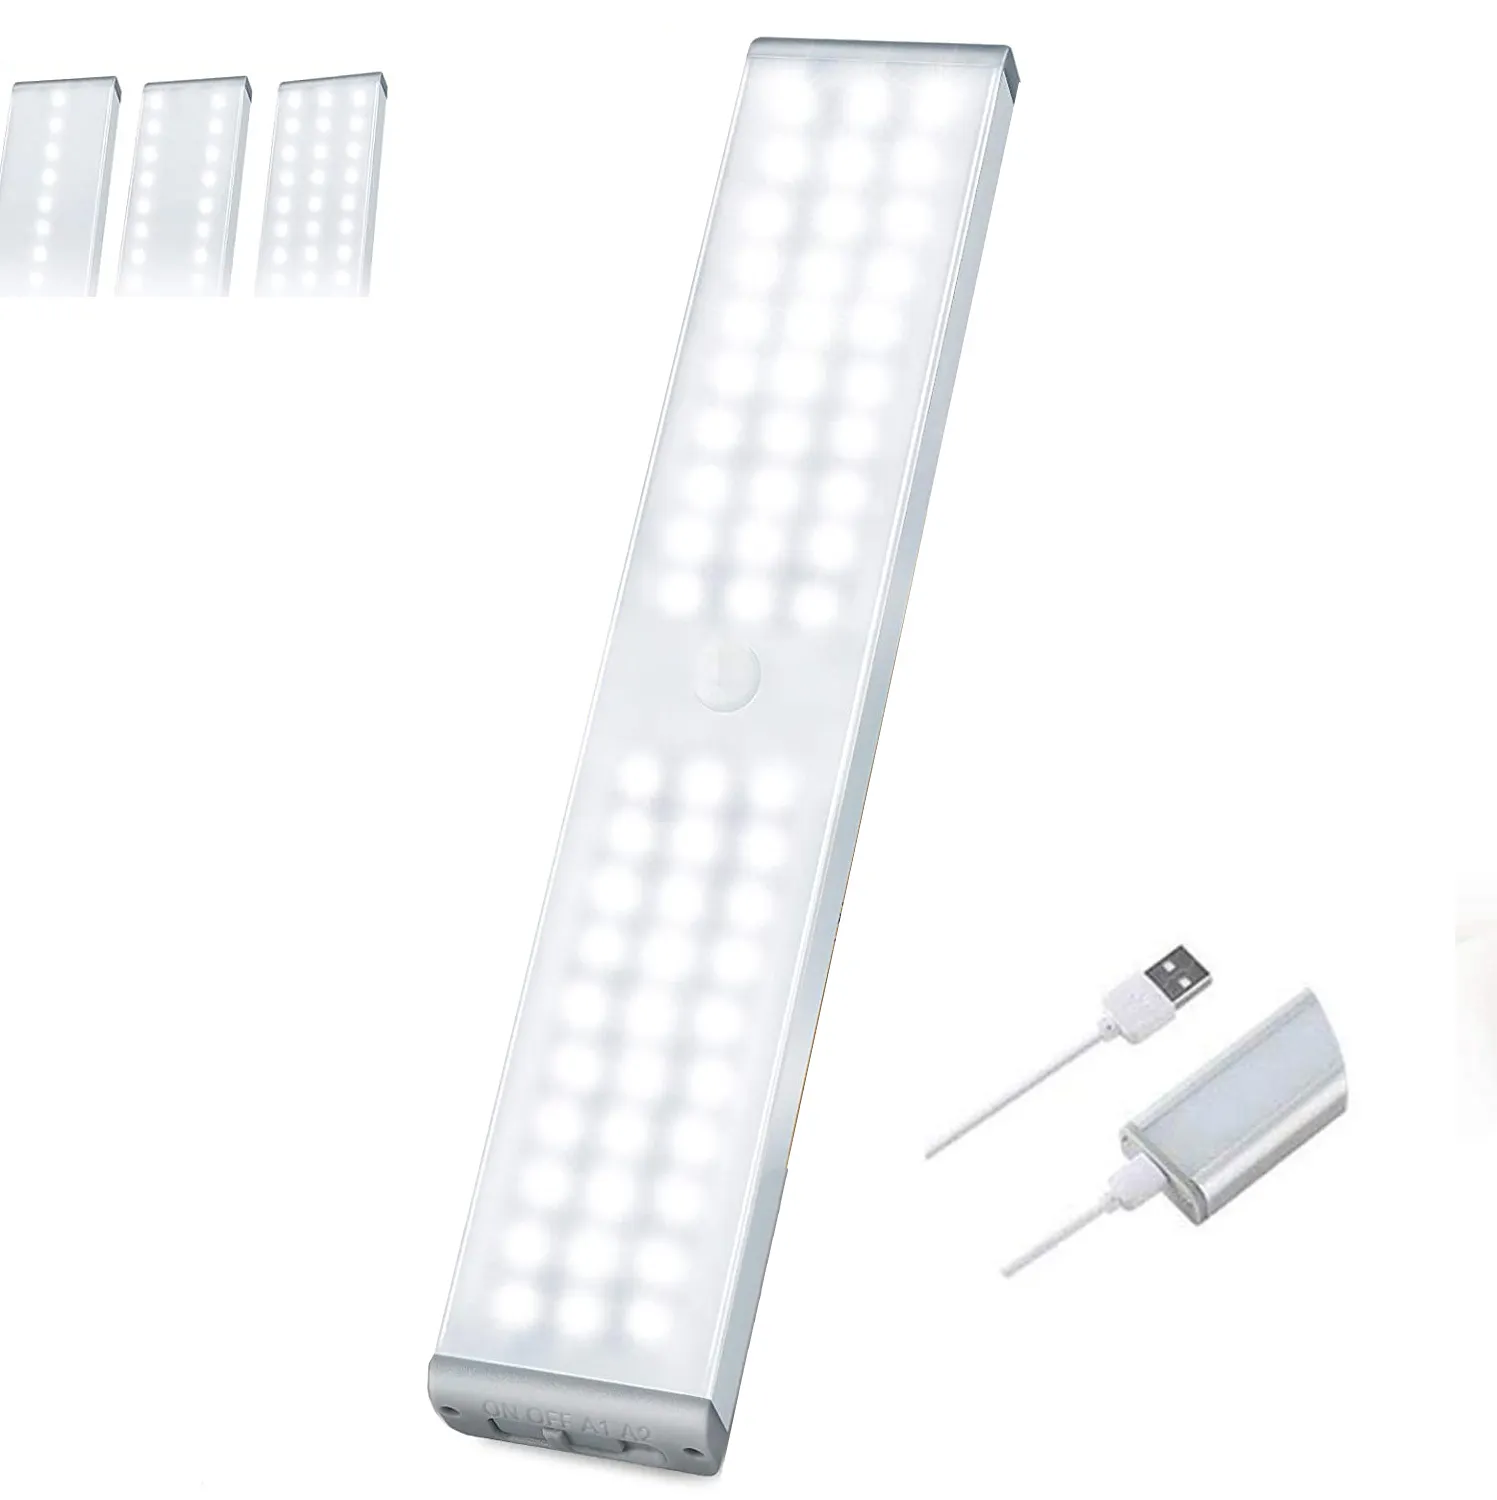 motion sensor 3 row led light bar cool white for closet cabinet amazon top seller 2022 cabinet light motion sensor